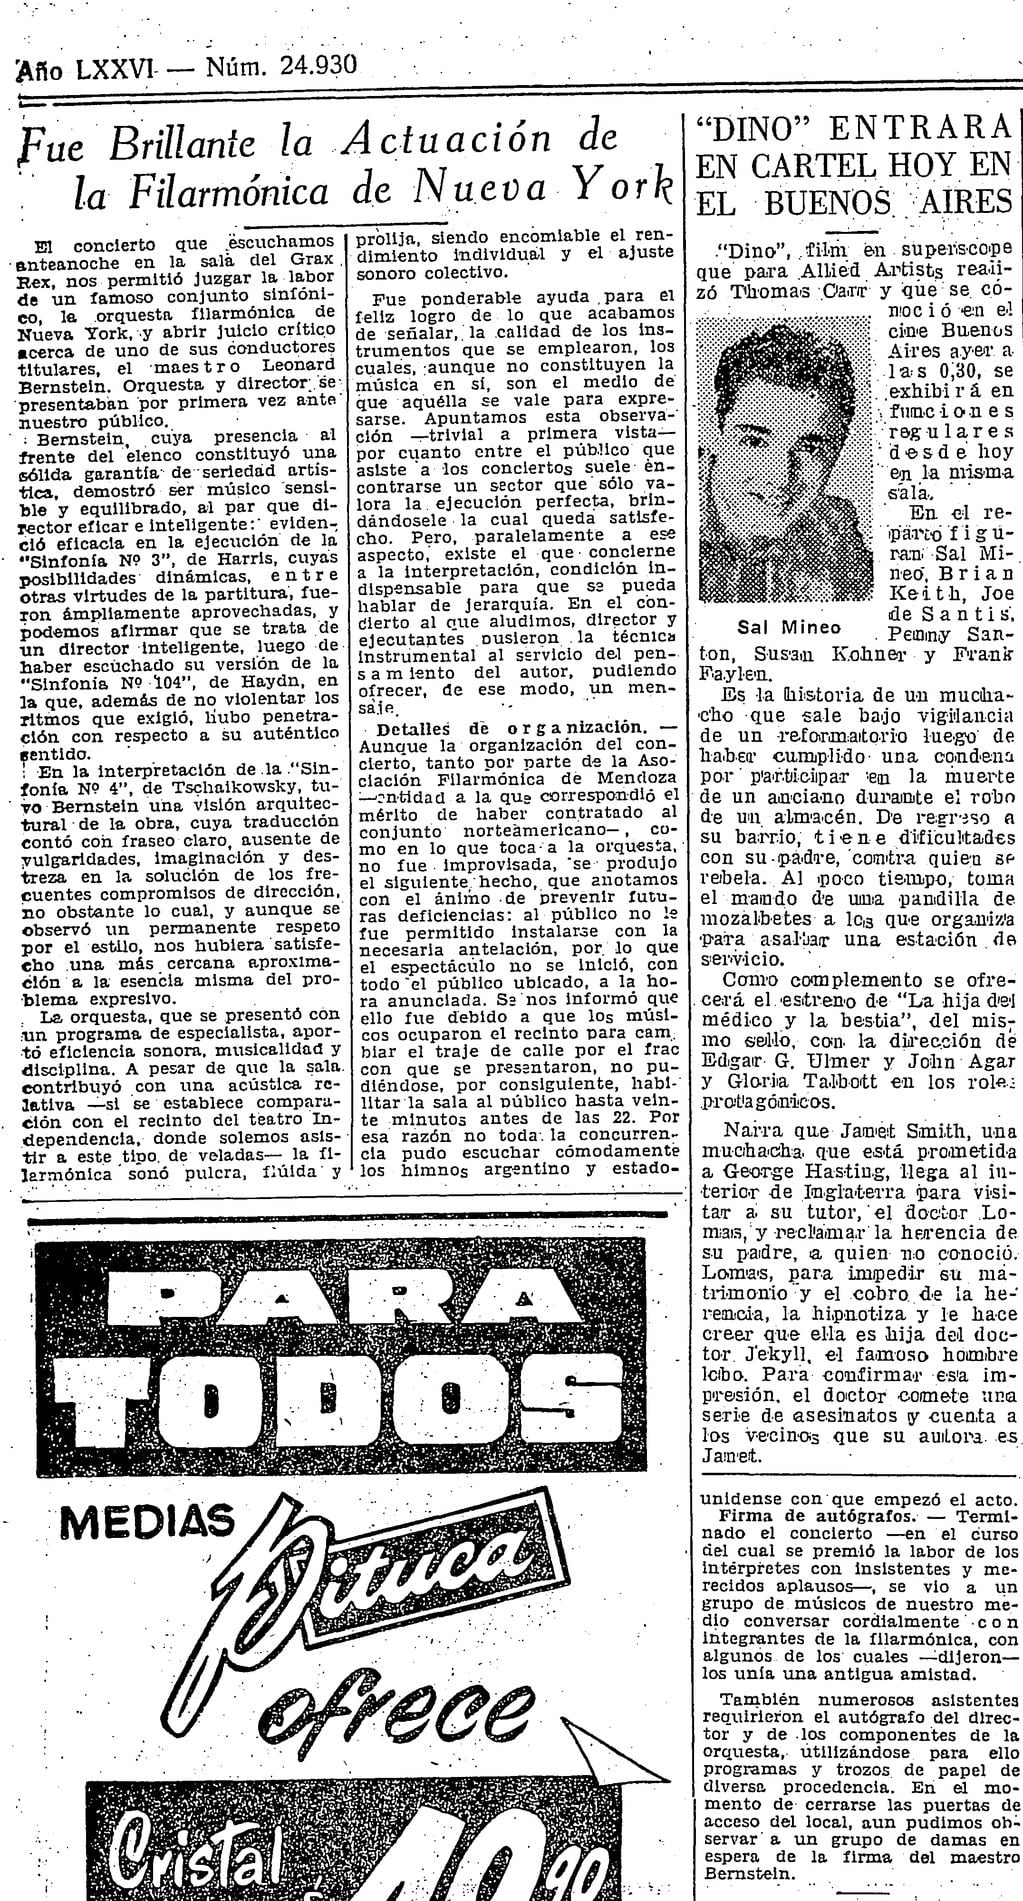 La crítica publicada el 26 de mayo de 1958. Foto: Archivo de diario Los Andes.